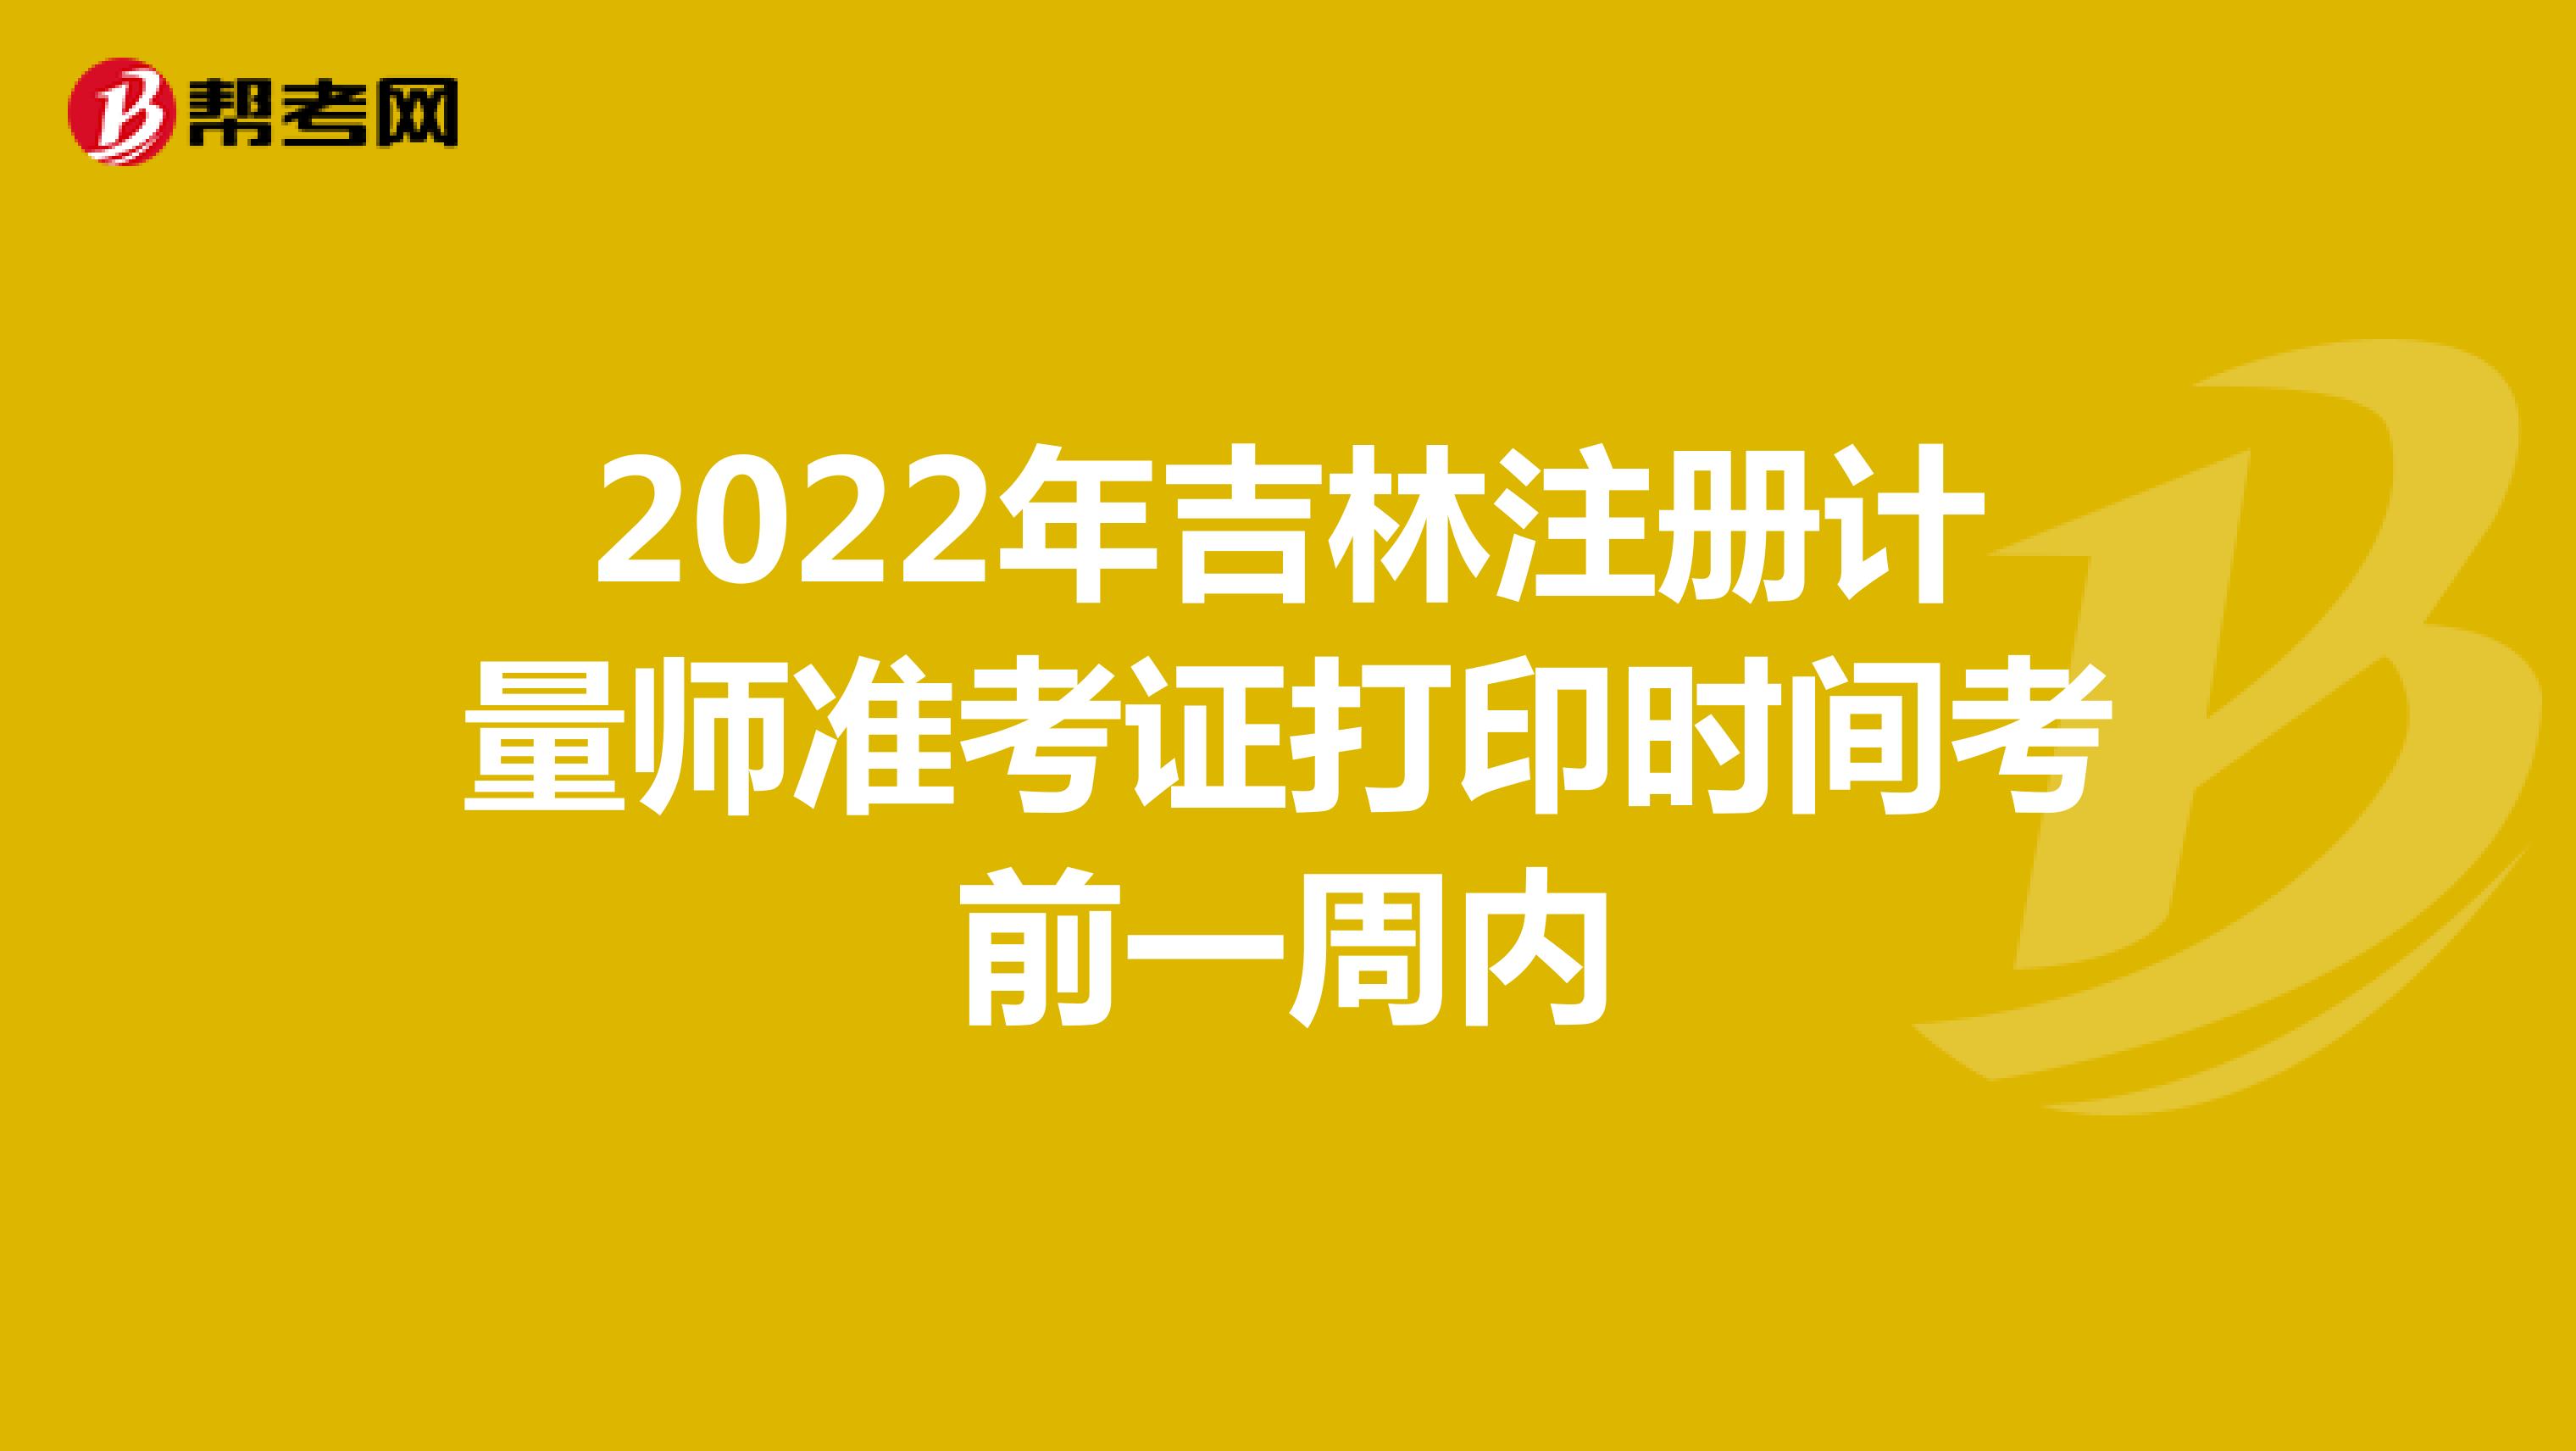 2022年吉林注册计量师准考证打印时间考前一周内